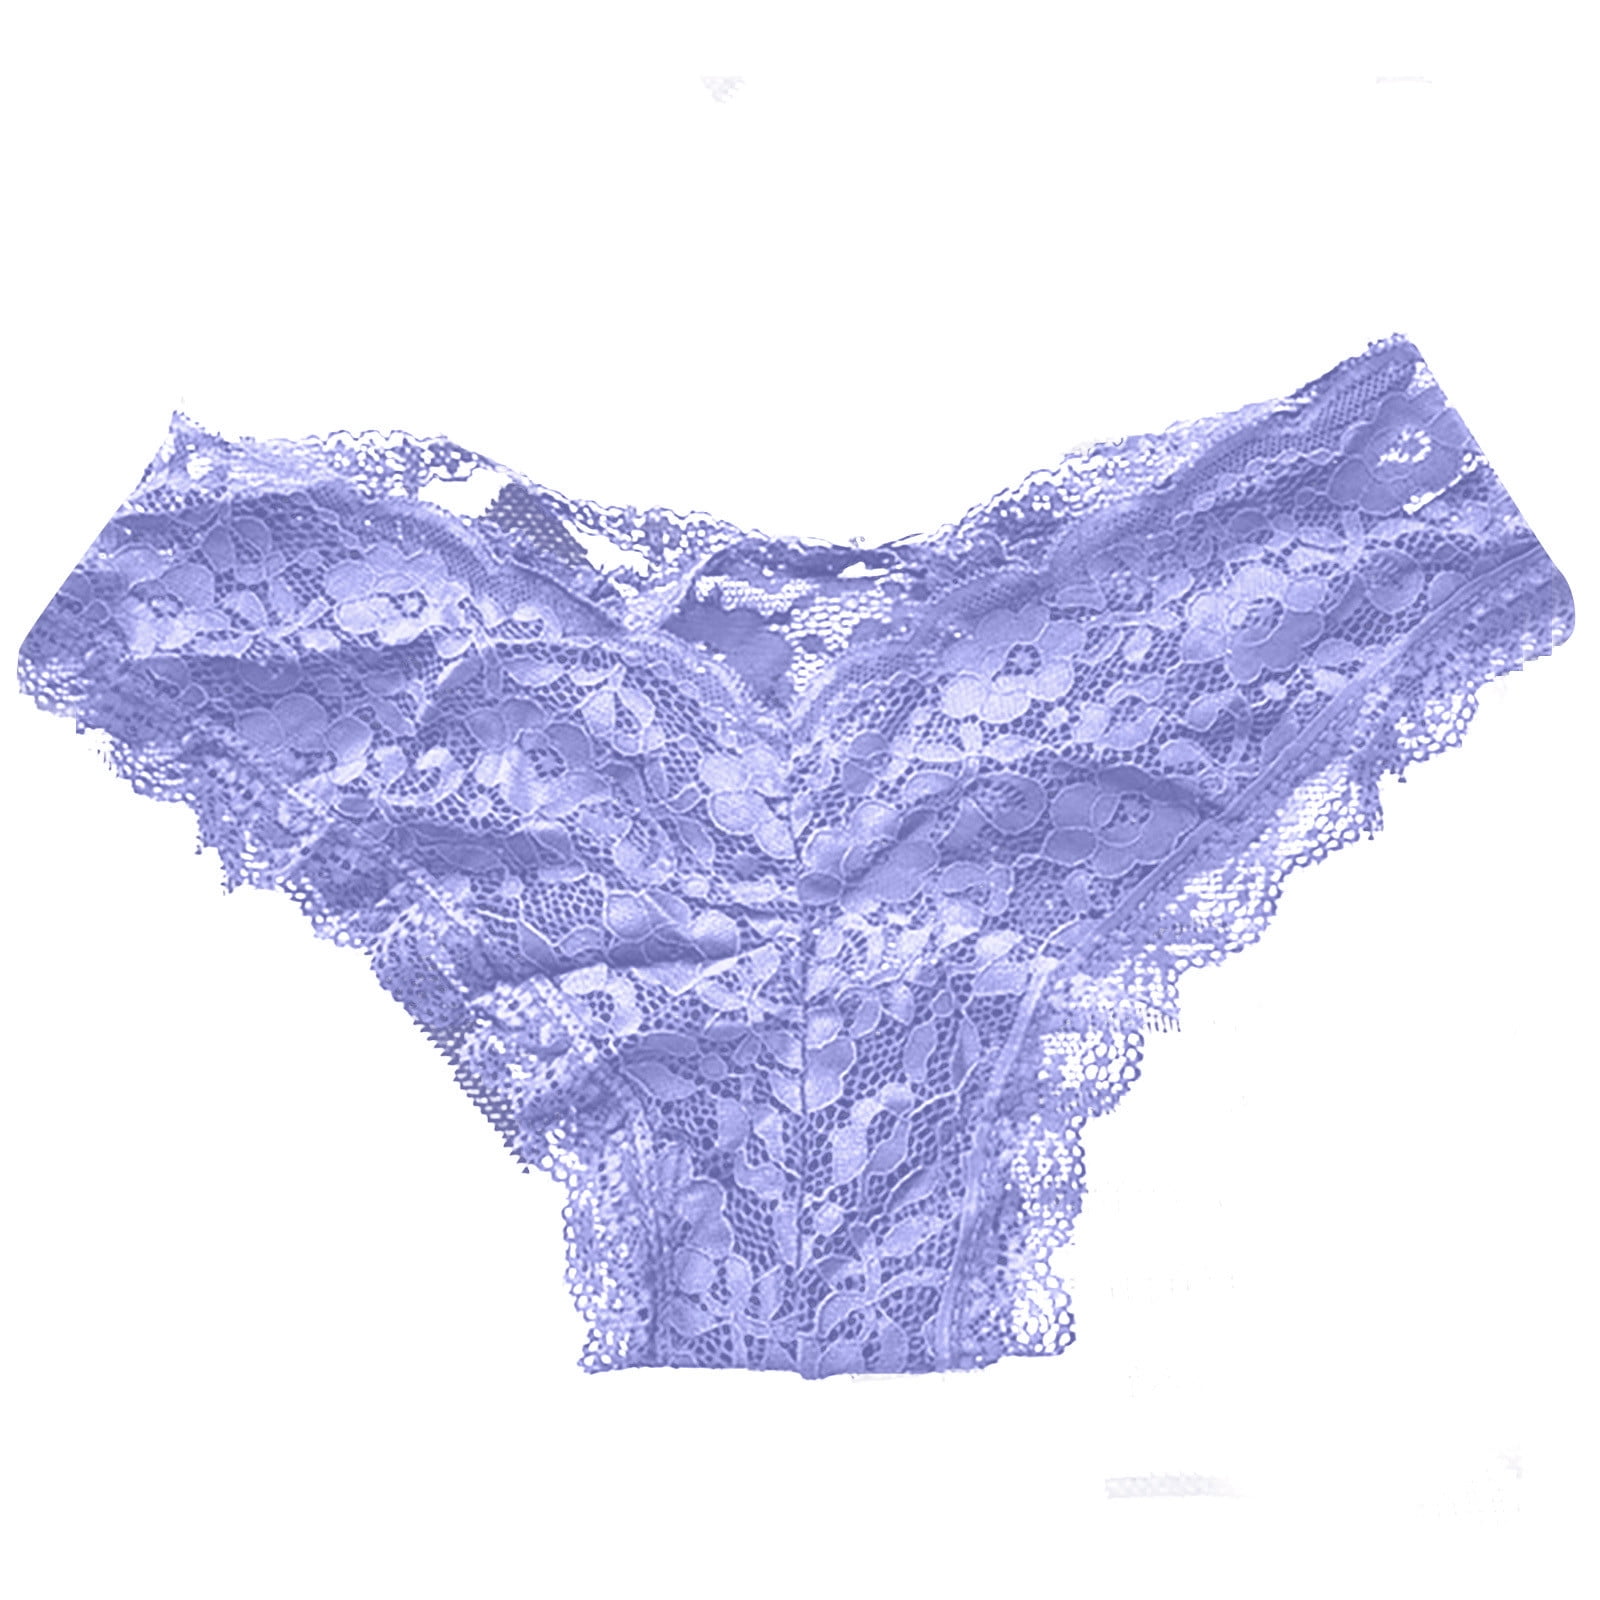 Victoria's Secret: Flash sale! Panties $4.99 & up.